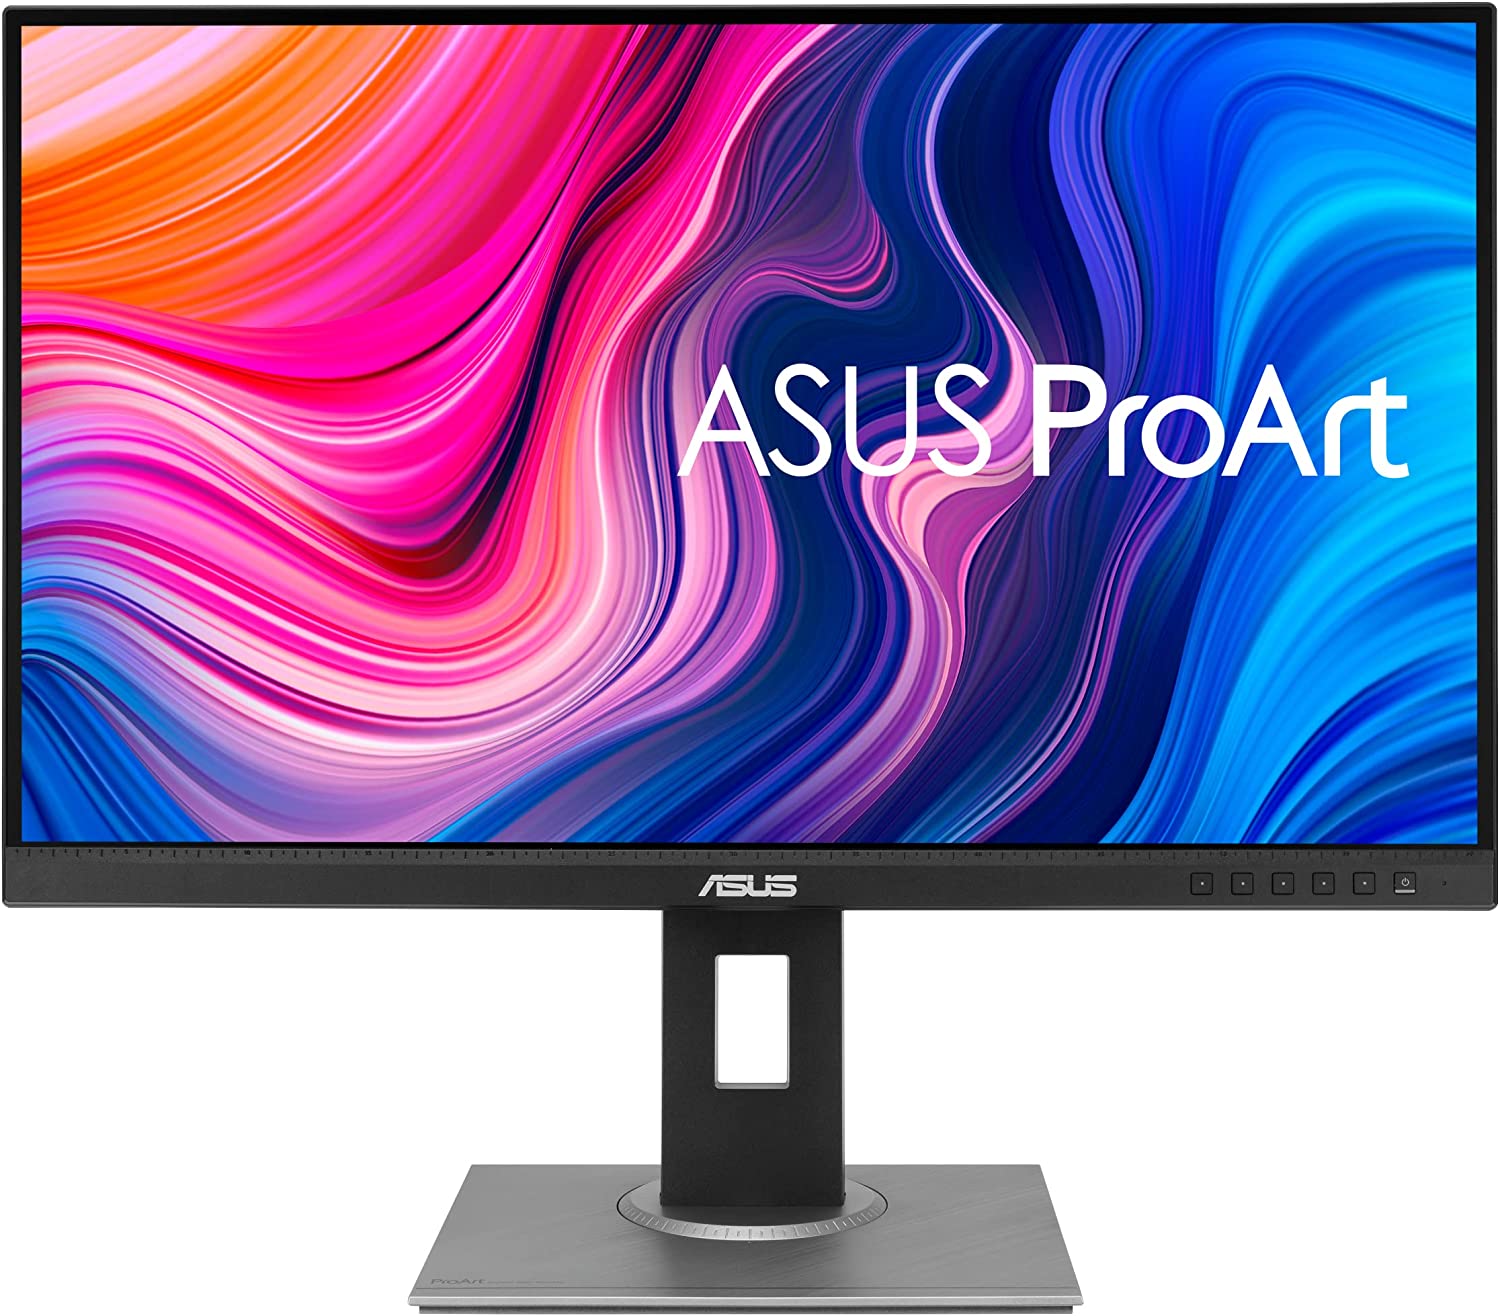 ASUS ProArt Display PA278QV 27 WQHD 2560 x 1440 Monitor 100 sRGBRec. 709 ΔE 2 IPS DisplayPort HDMI DVI D Mini DP Calman Verified Eye Care 1